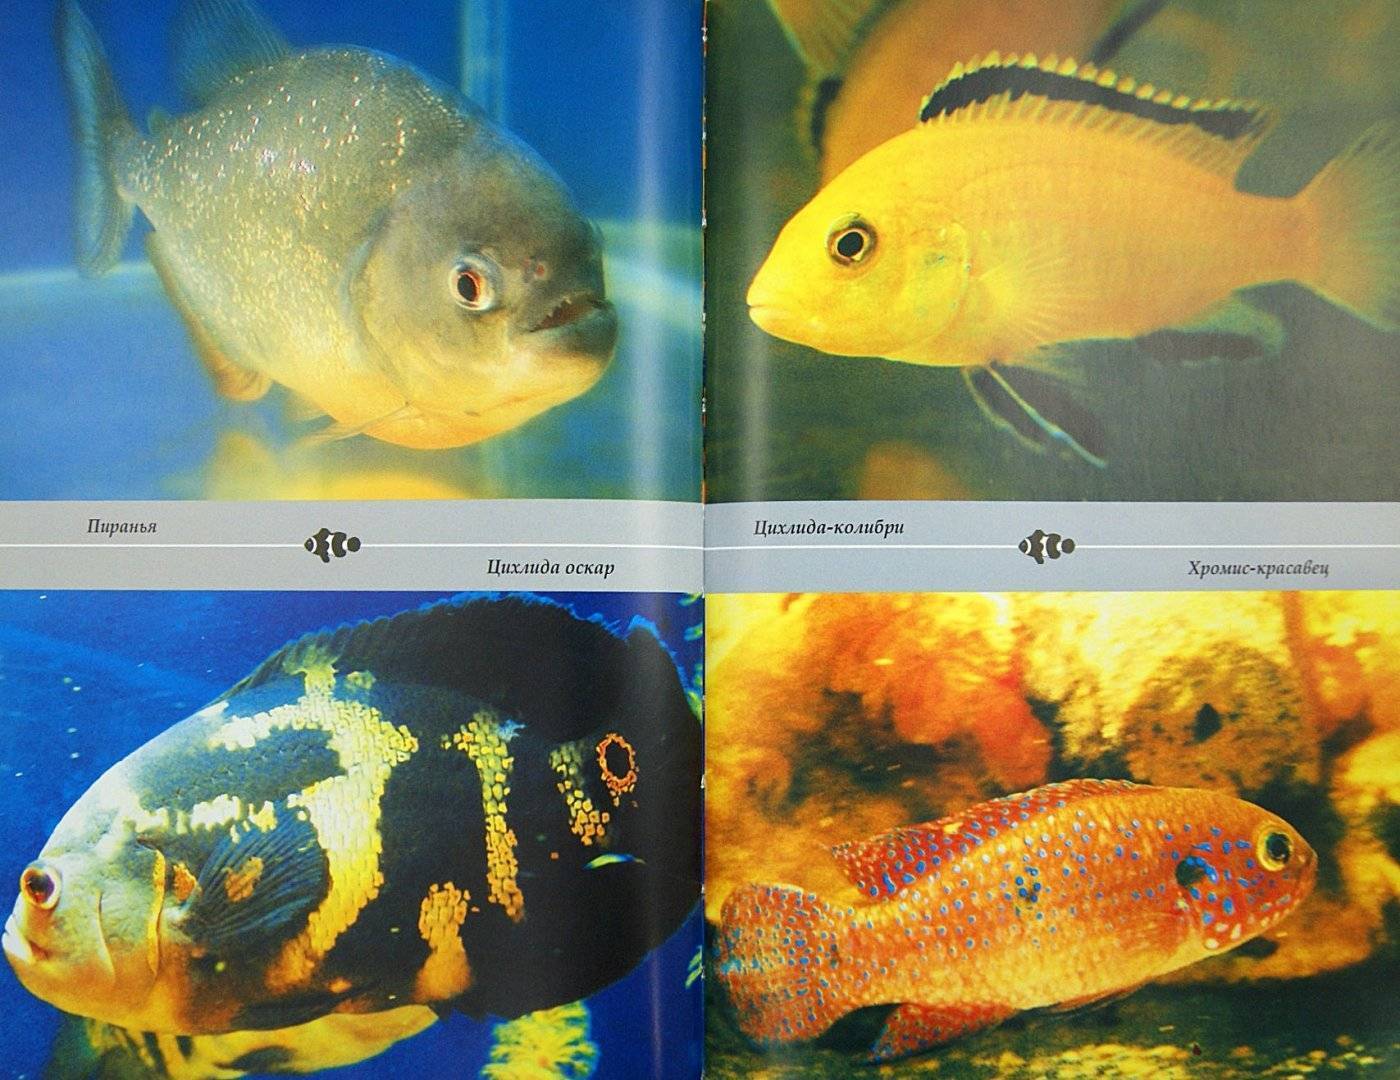 Аквариумные рыбки: названия самых популярных комнатных видов по алфавиту для аквариума, каталог, описание для новичков